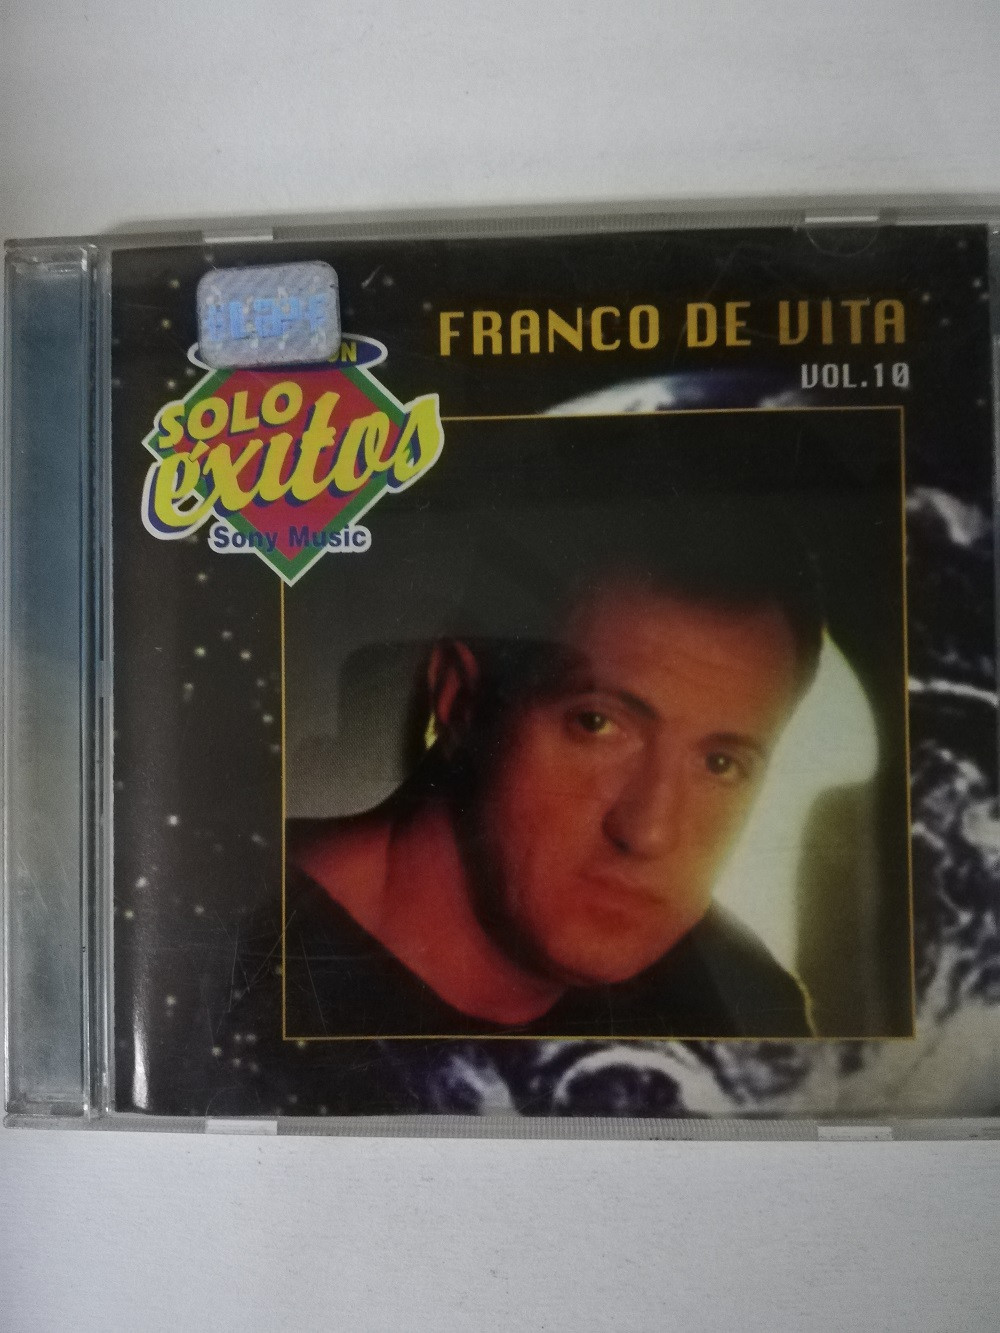 Imagen CD FRANCO DE VITA - SOLO EXITOS  1